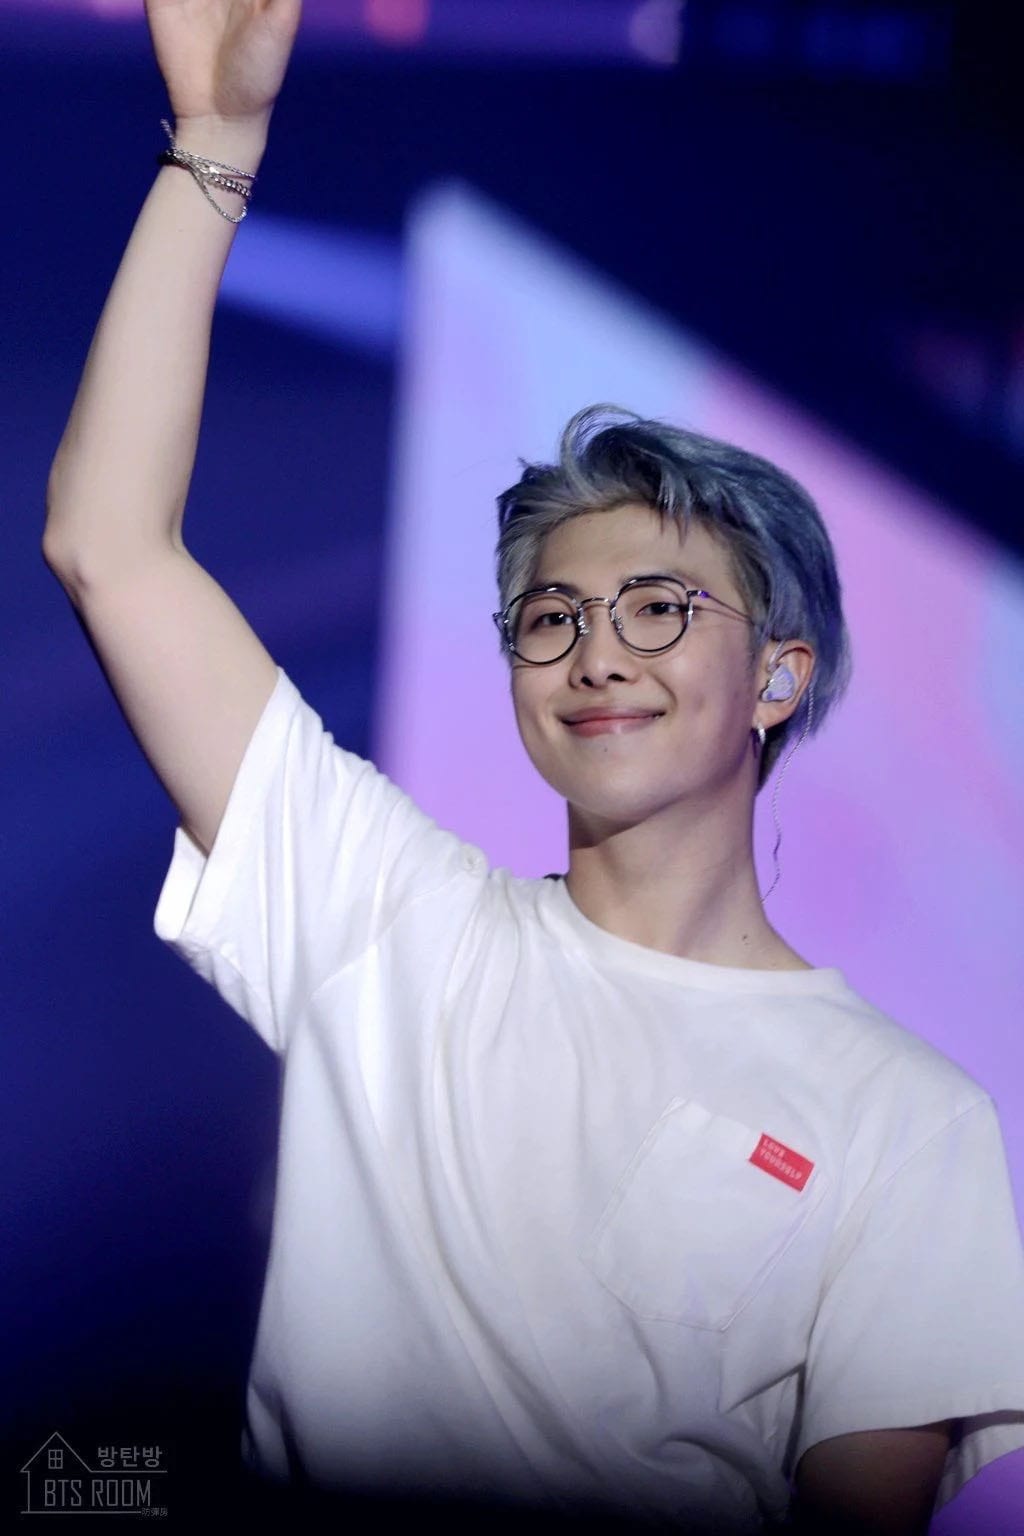 Кому из участников BTS больше идут очки?